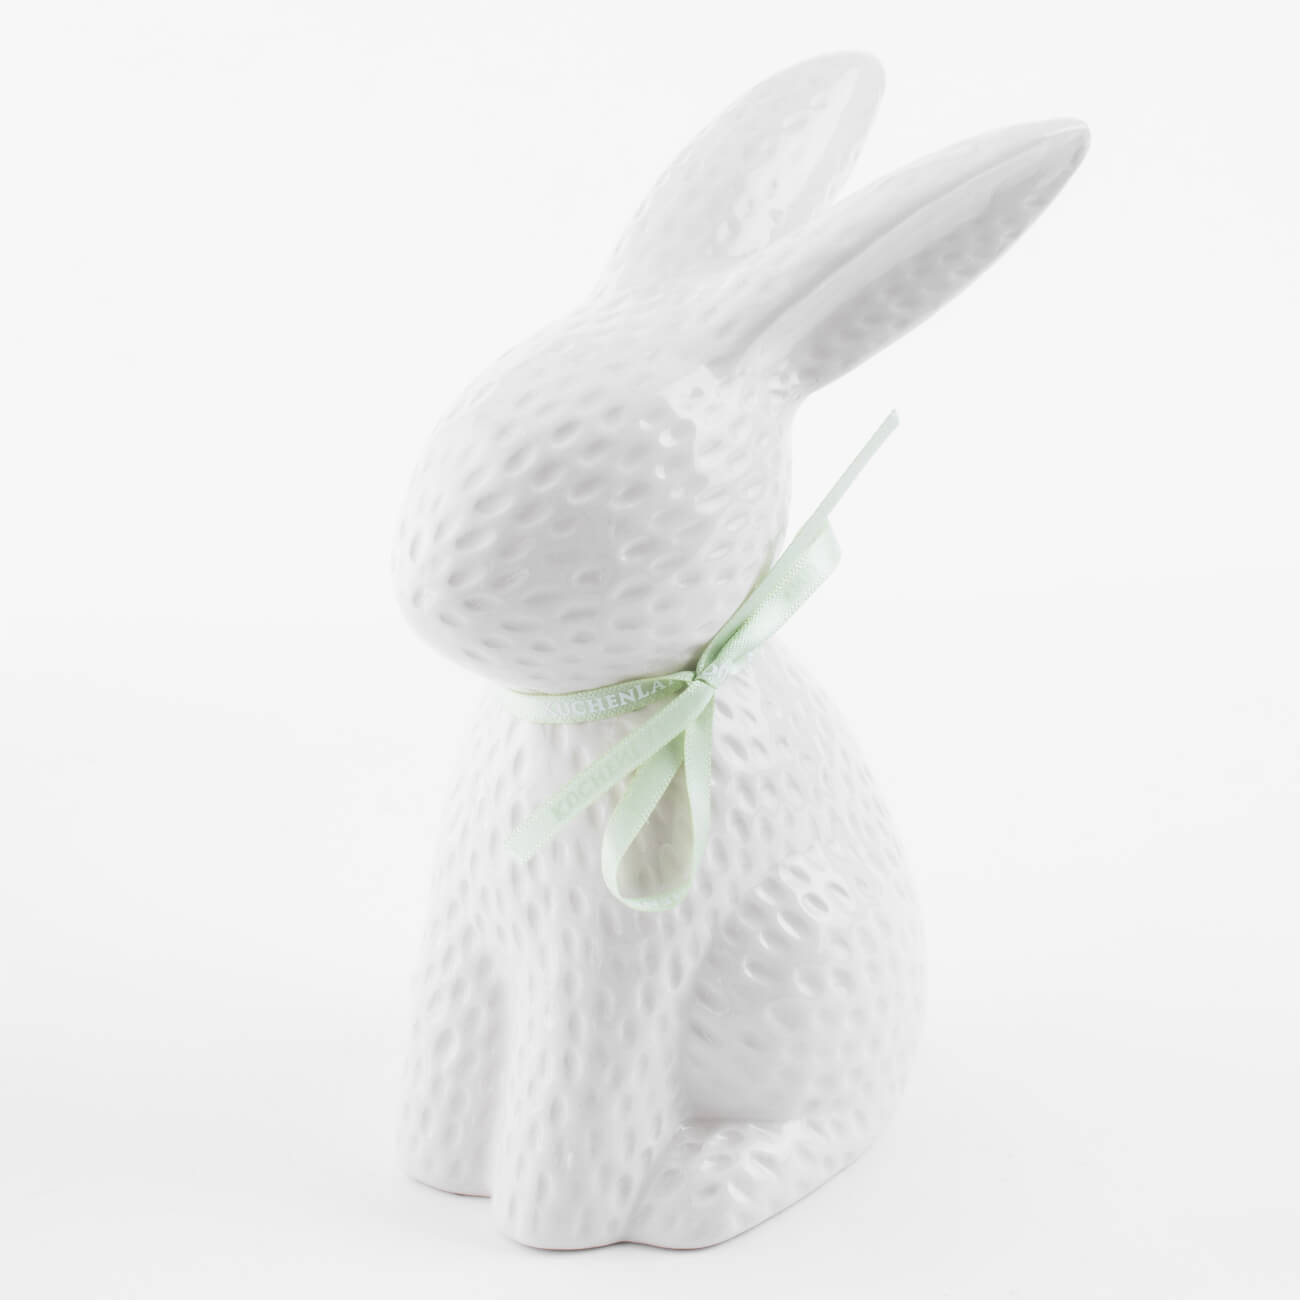 емкость для хранения 17х14 см 1 5 л с ручкой керамика молочная перламутр кролик easter Статуэтка, 18 см, керамика, молочная Кролик сидит, Easter blooming